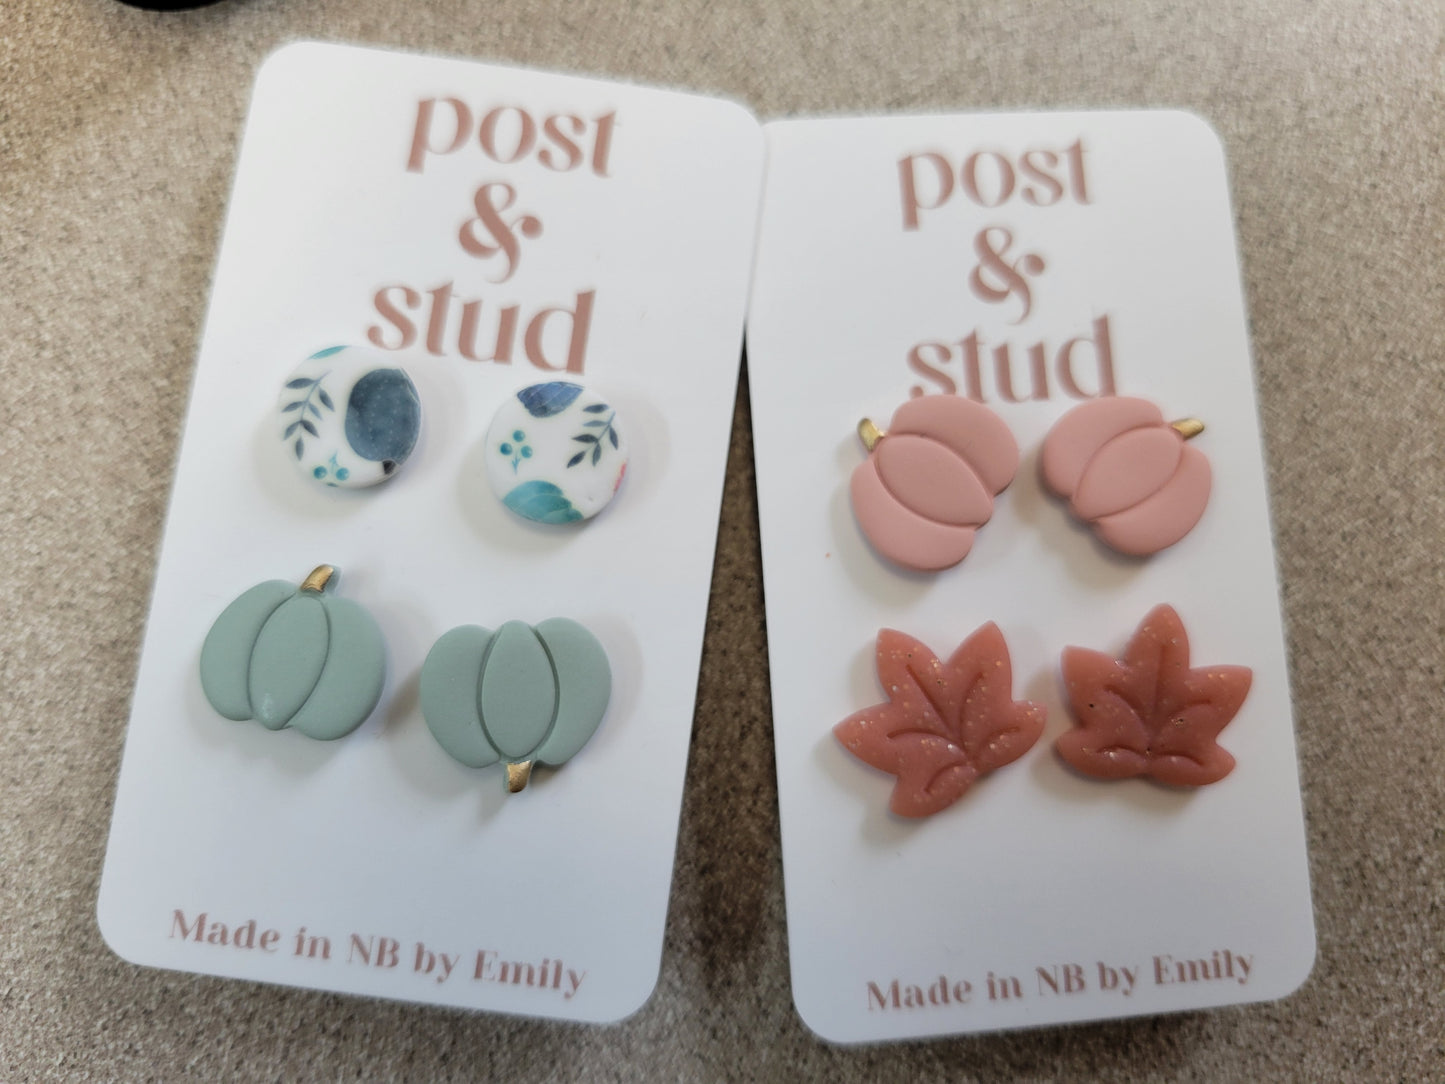 Post & Stud earrings